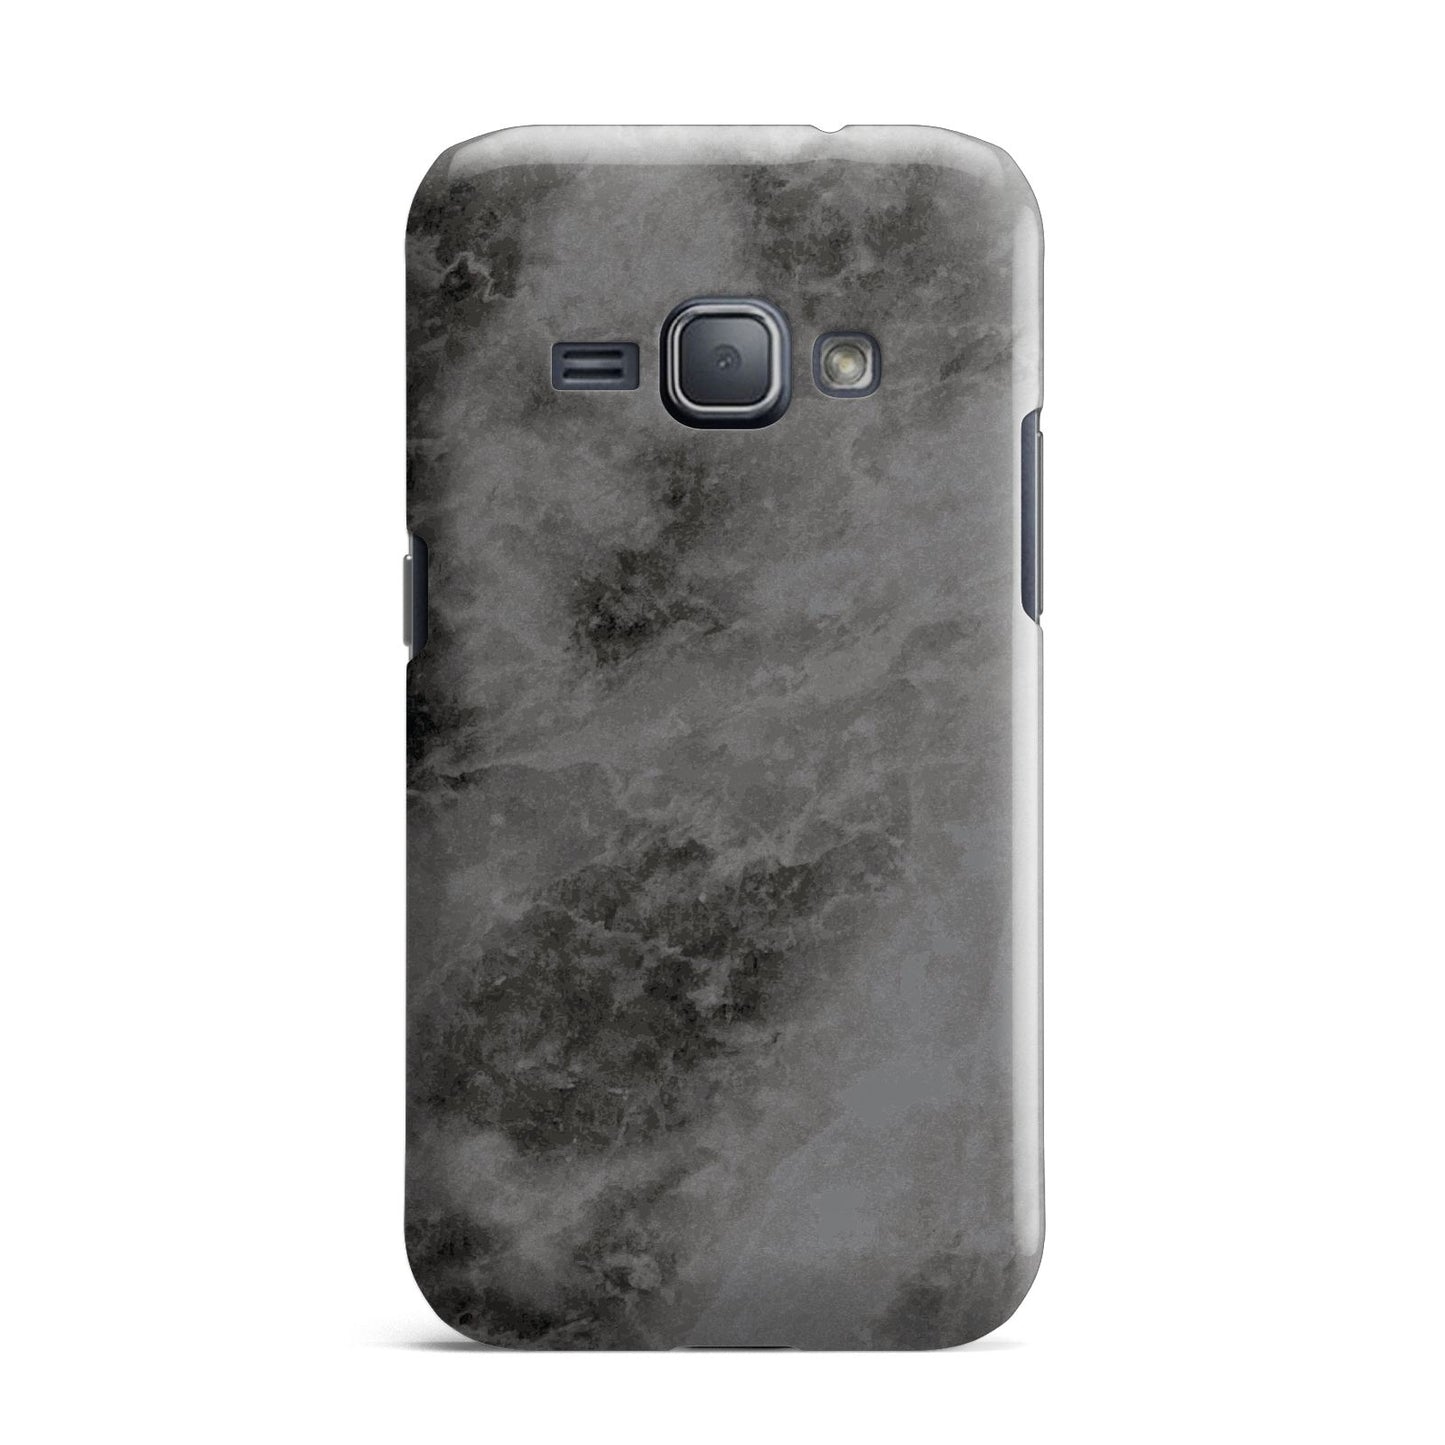 Faux Marble Grey Black Samsung Galaxy J1 2016 Case